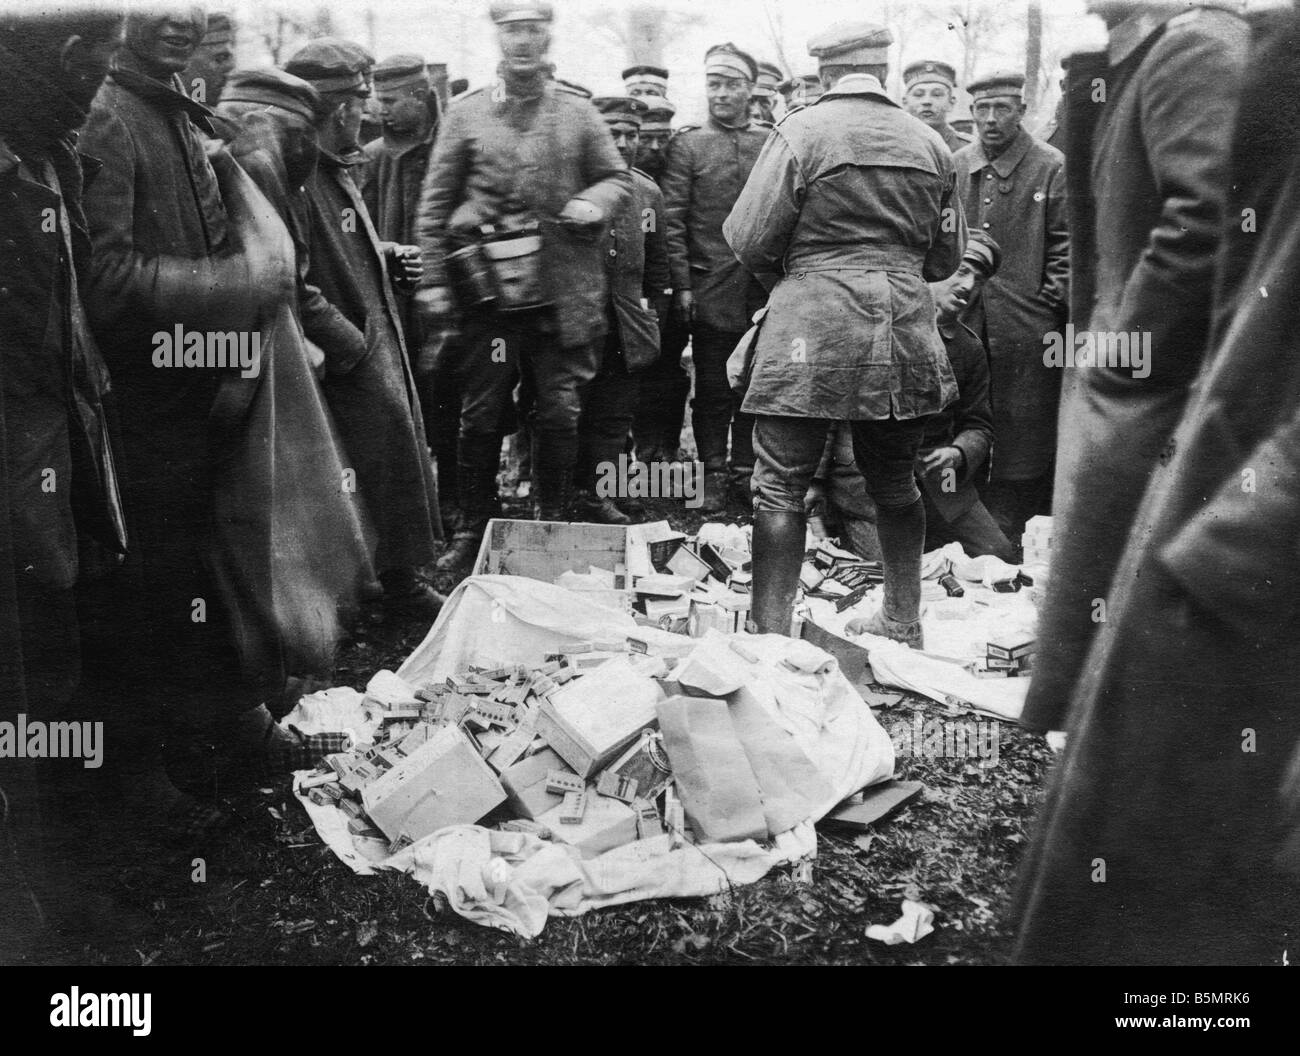 9 1918 3 0 A1 12 WW1 West Fr Ger soldati bottino di guerra mondiale 1 fronte occidentale tedesco grande offensiva Marzo Luglio 1918 soldati tedeschi Foto Stock